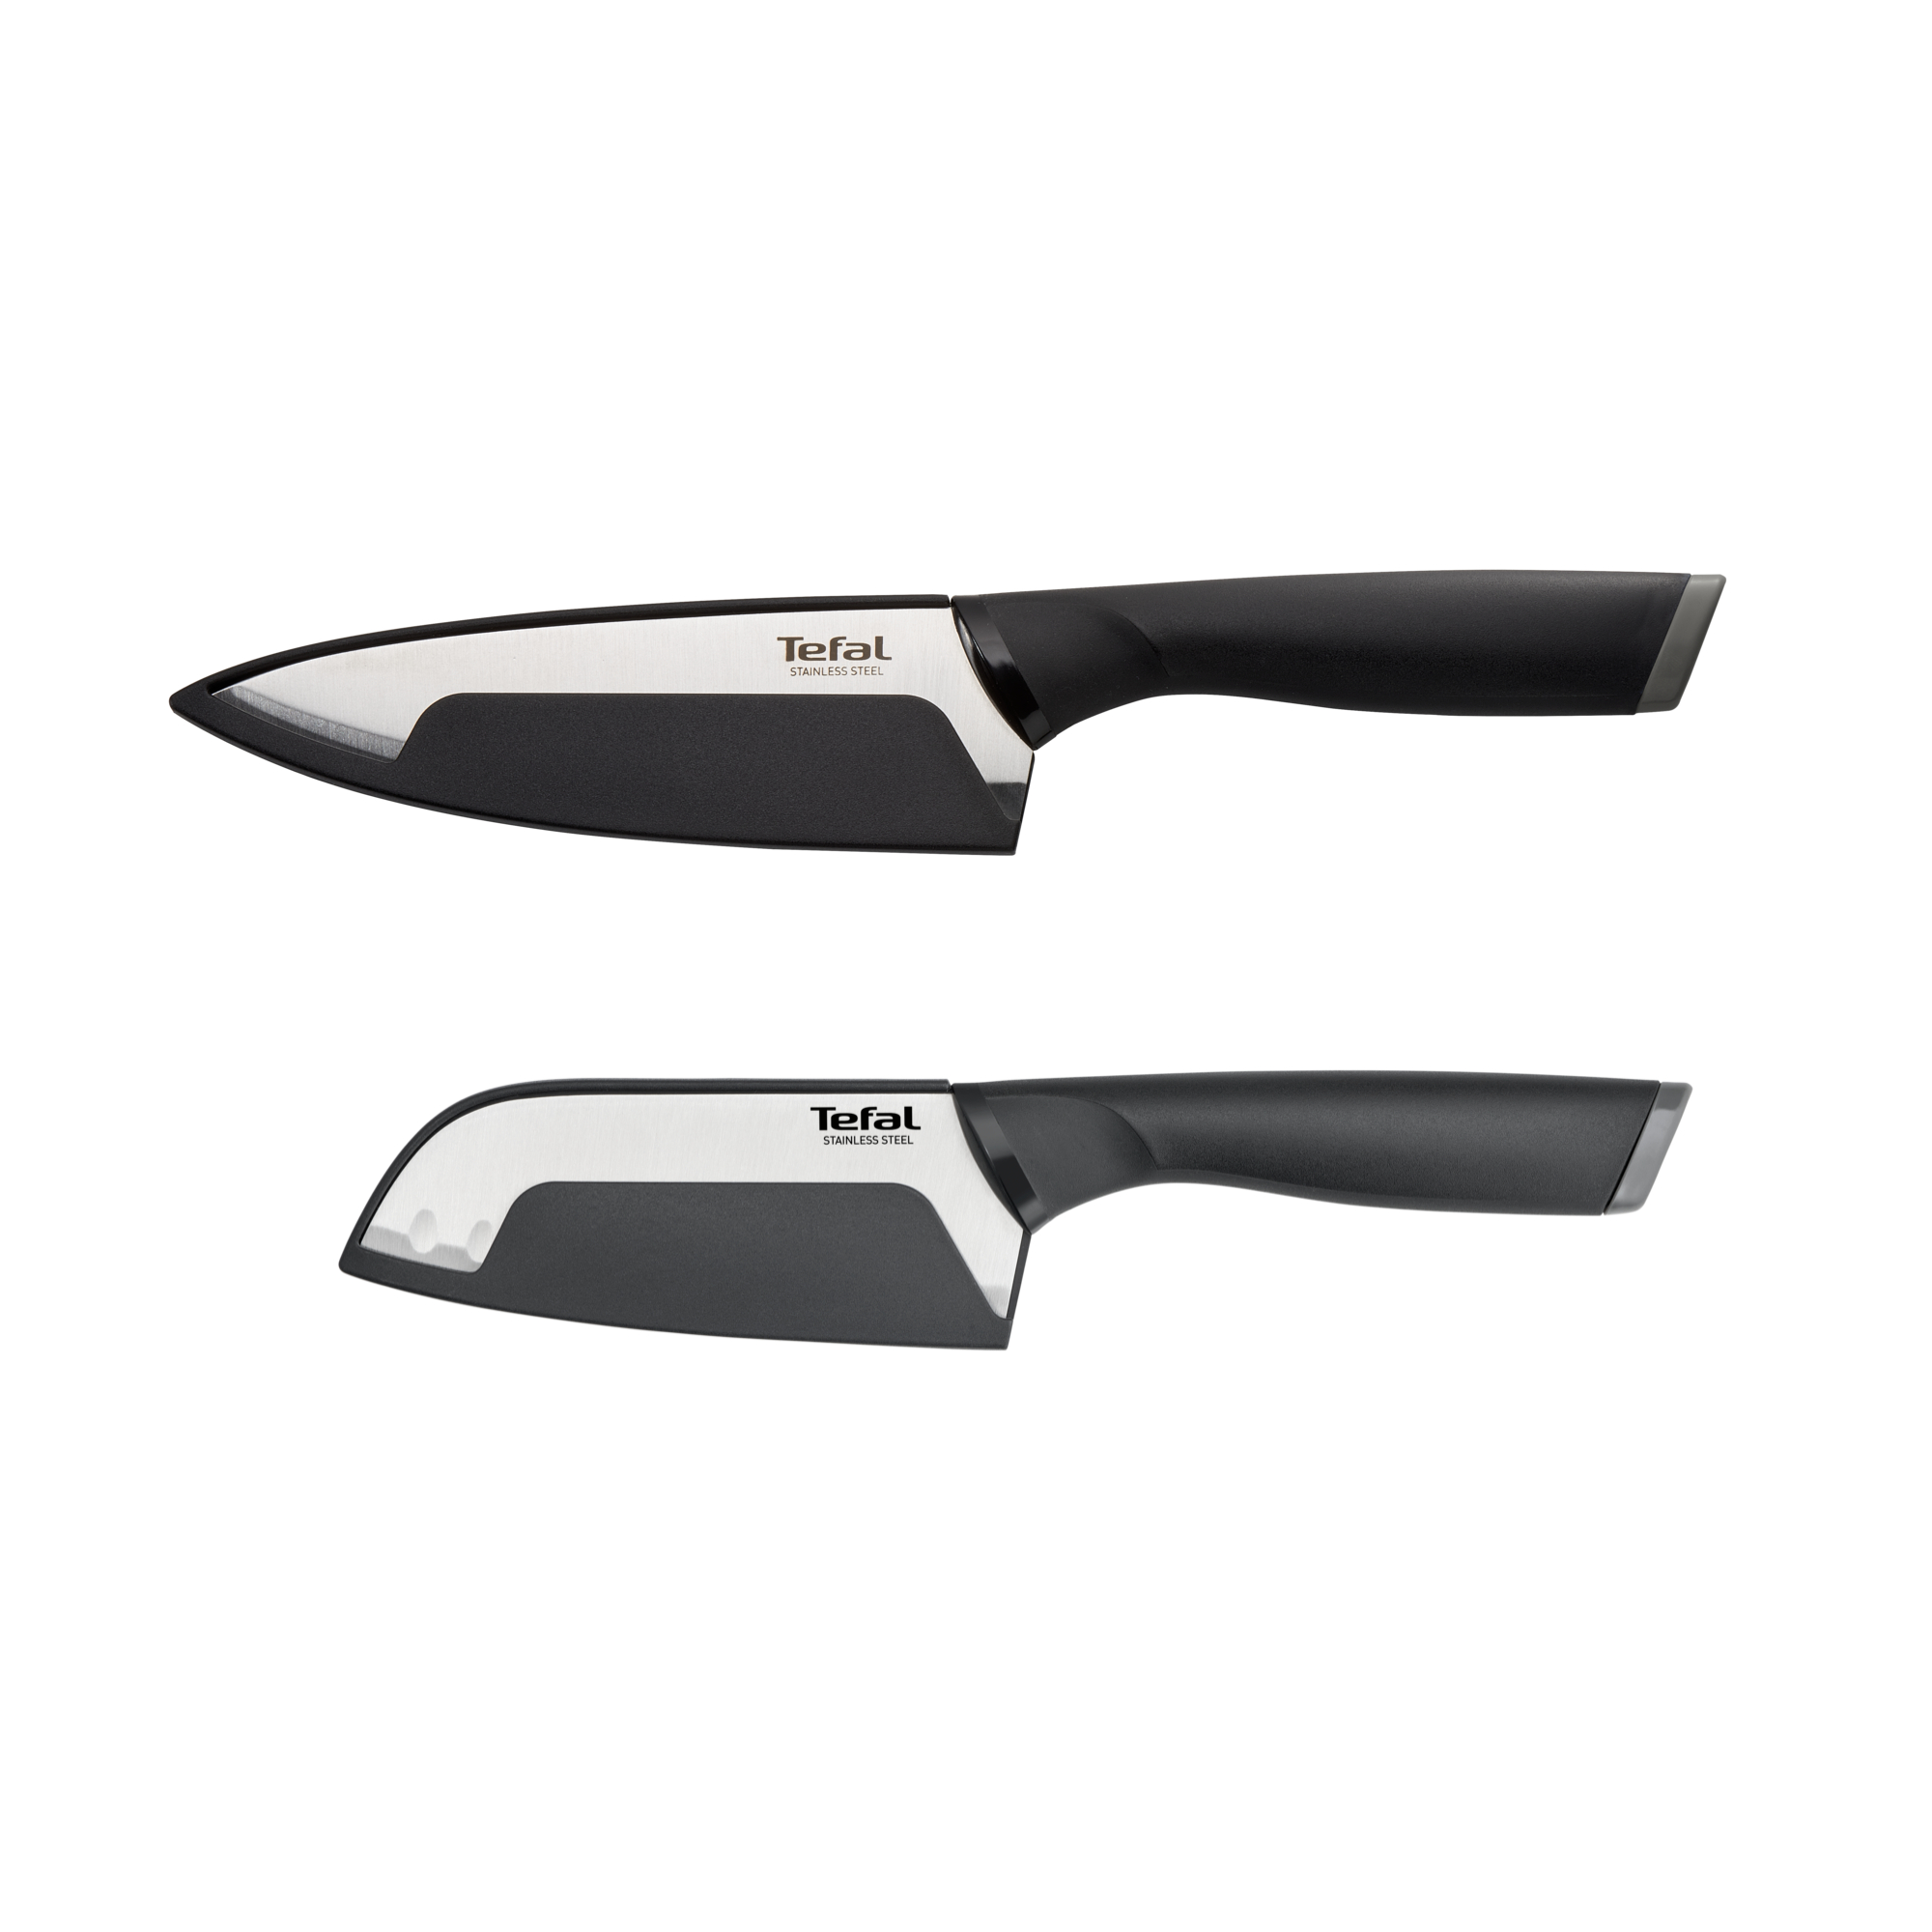 Bộ dao Tefal Comfort  K221S244 15cm và 12cm - Cầm nắm thoải mái - Vỏ bảo vệ an toàn - Hàng chính hãng